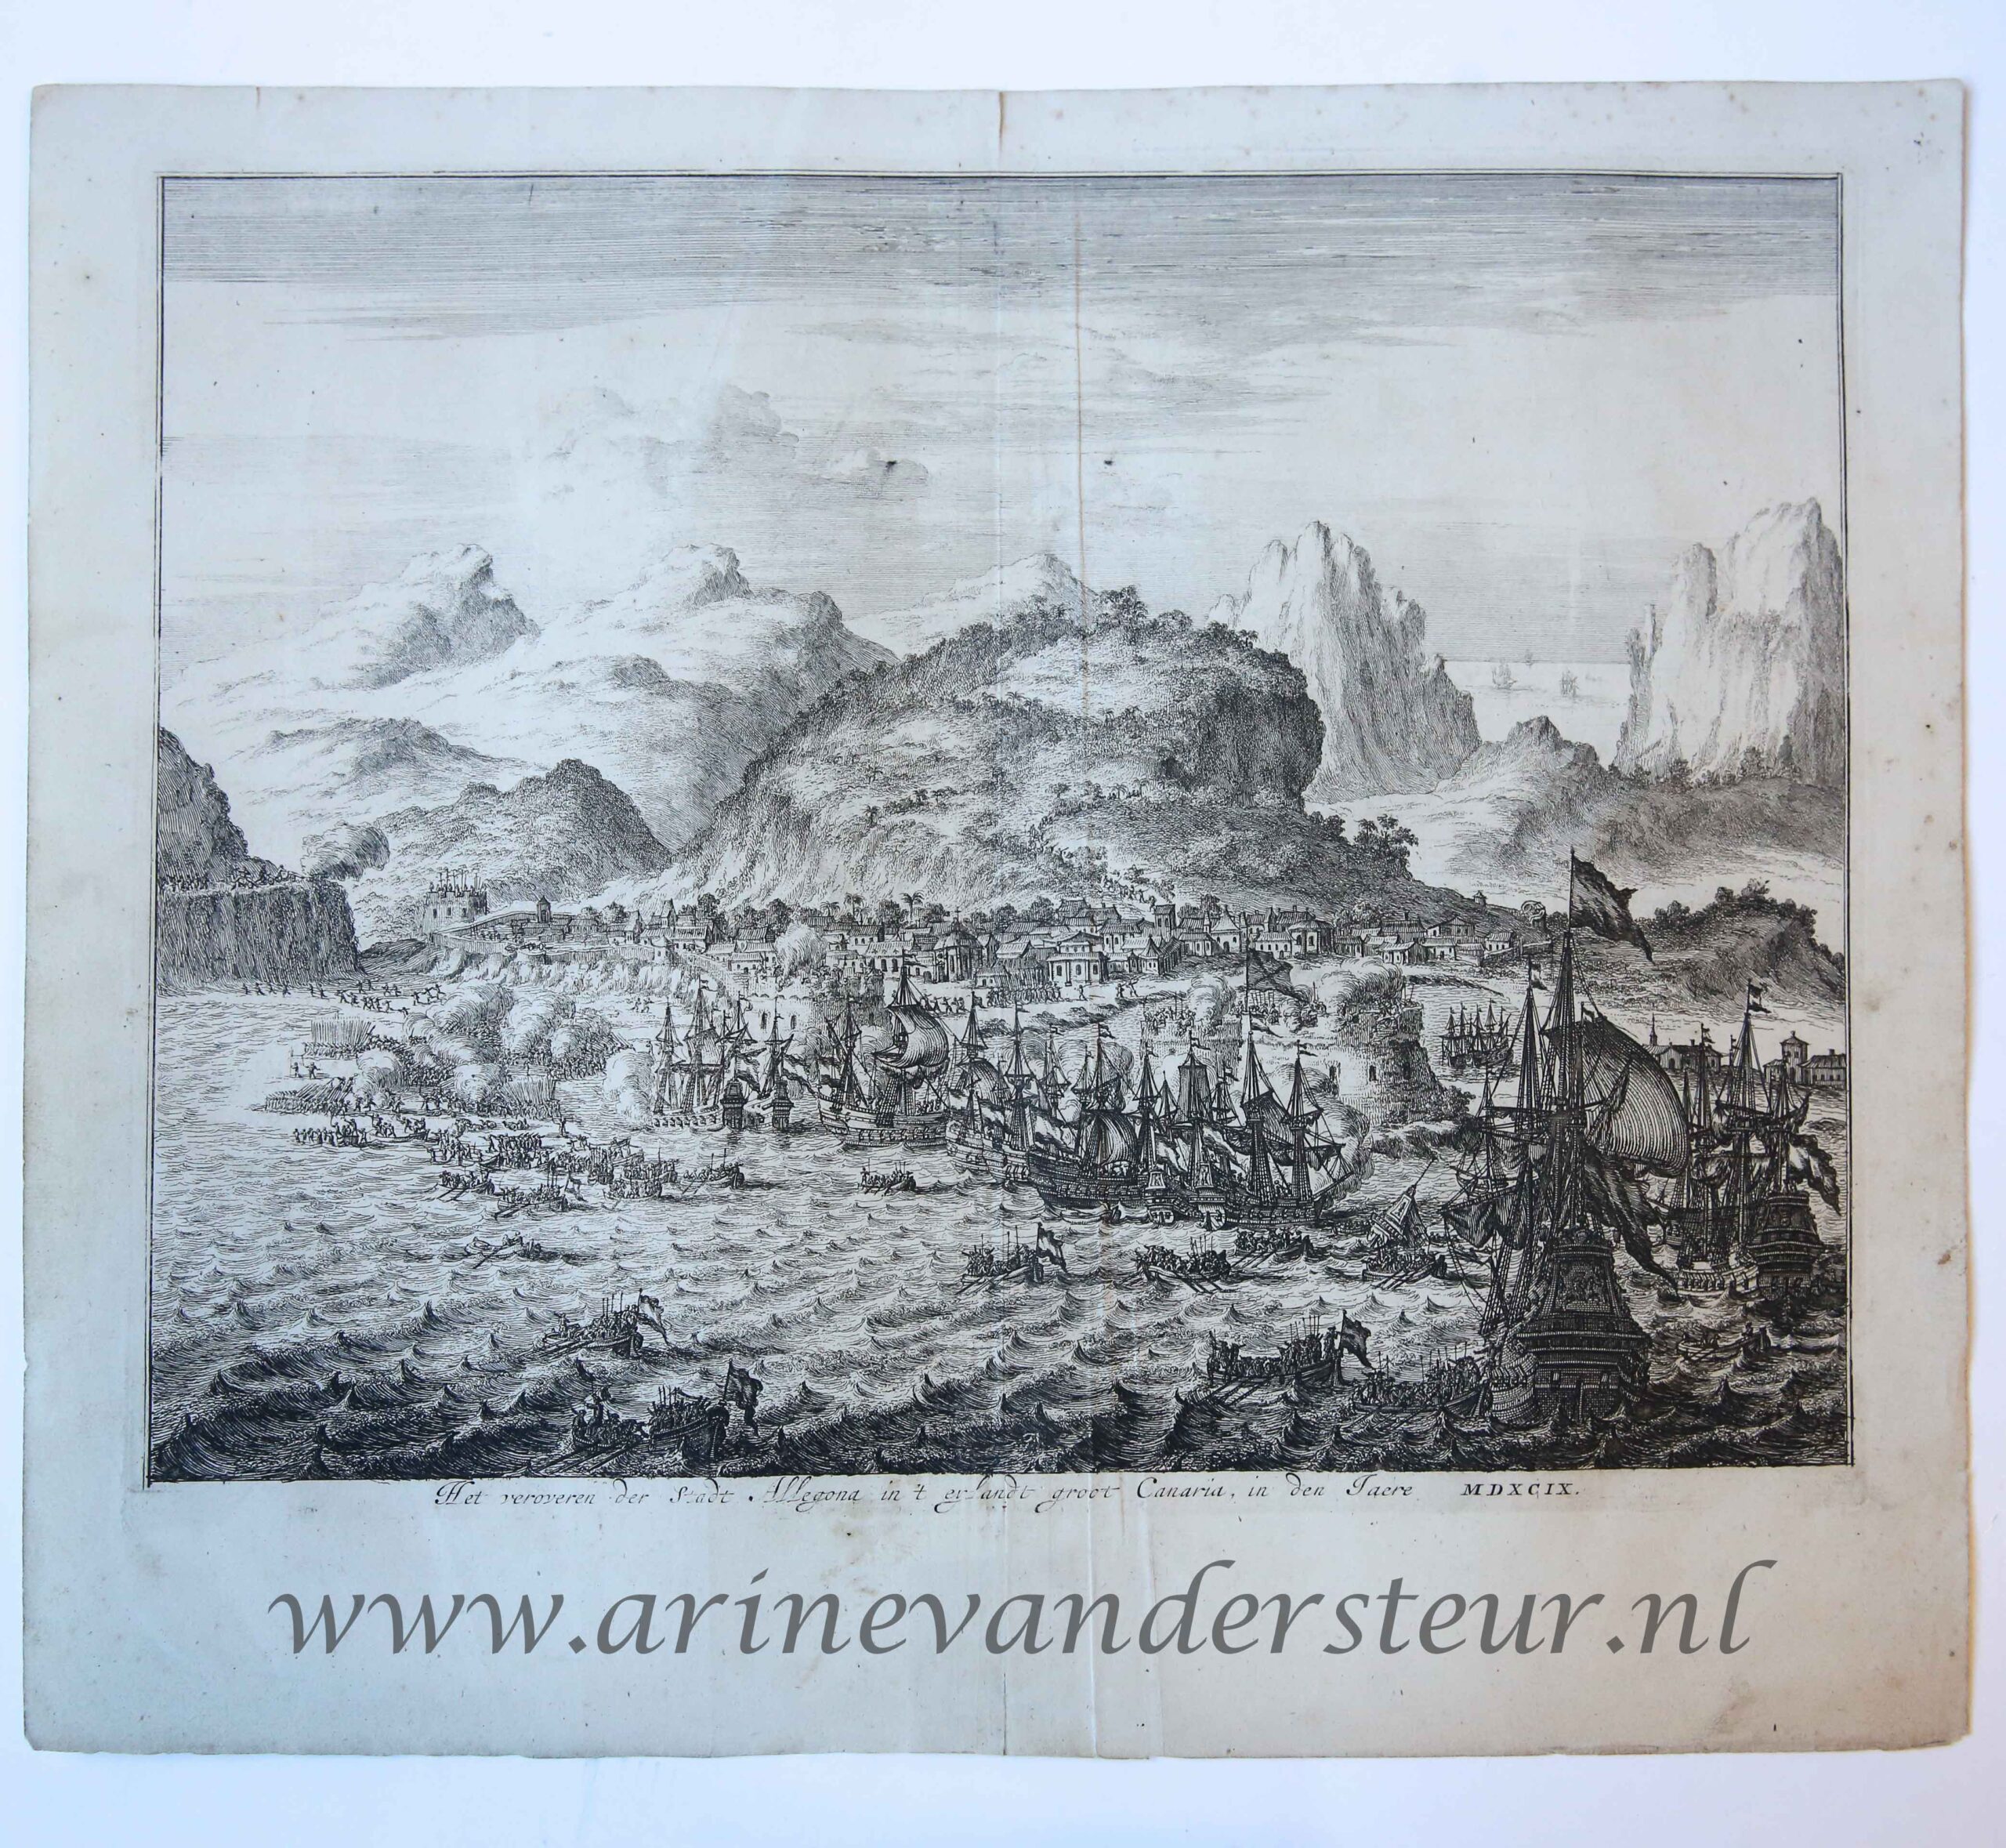 [History print Gran Canaria published 1684] 'Het veroveren der Stadt Allegona in 't eylandt groot Canaria'; capture of the city Allegona on Gran Canaria, 1599